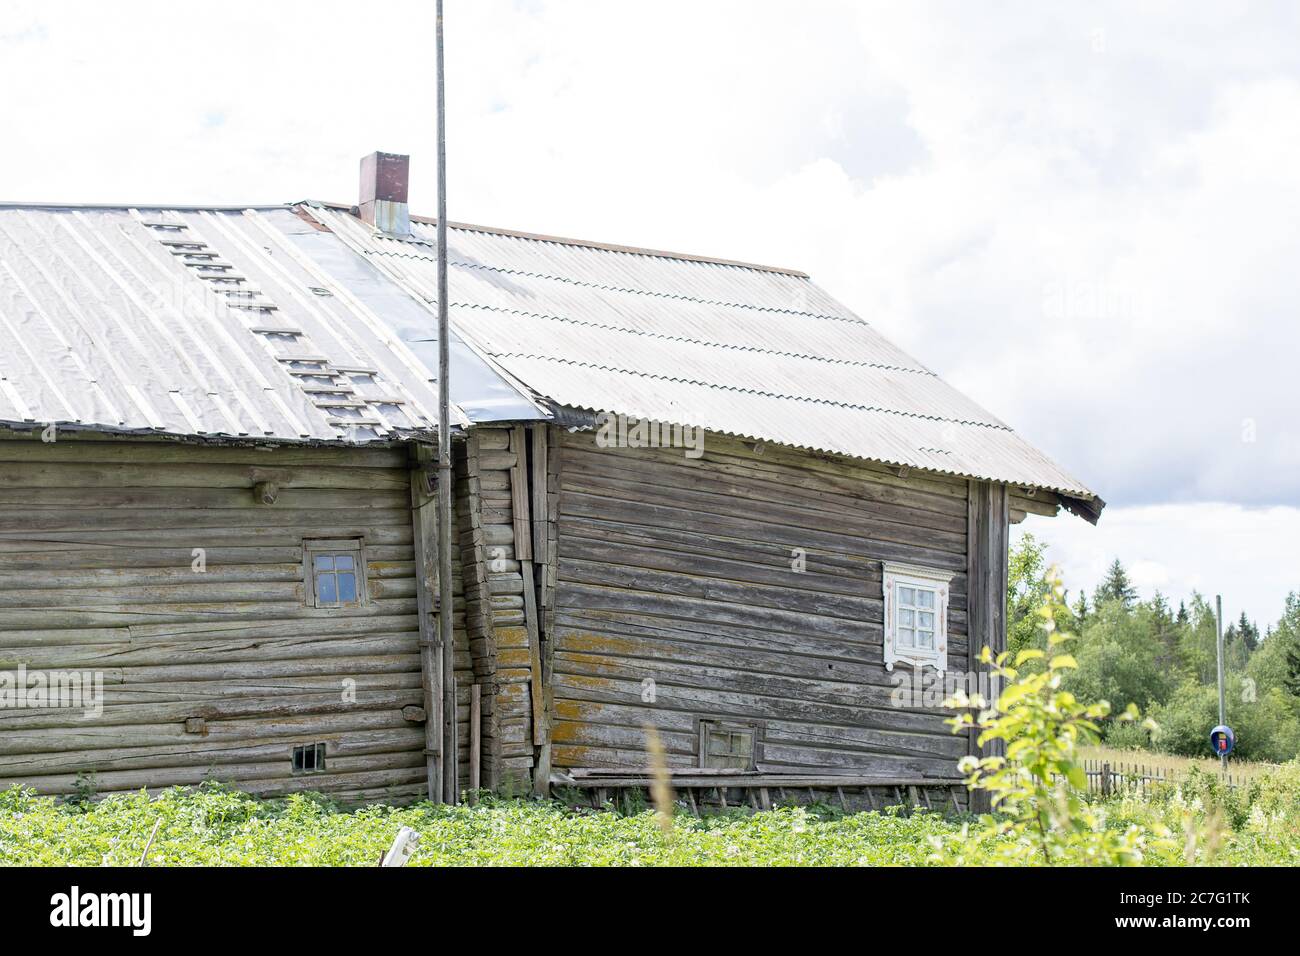 Kinerma, Russland - 13. Juli 2020: Kinerma ist eine ländliche Ortschaft im Prjaschinski Bezirk der Republik Karelien, Russland. Stockfoto